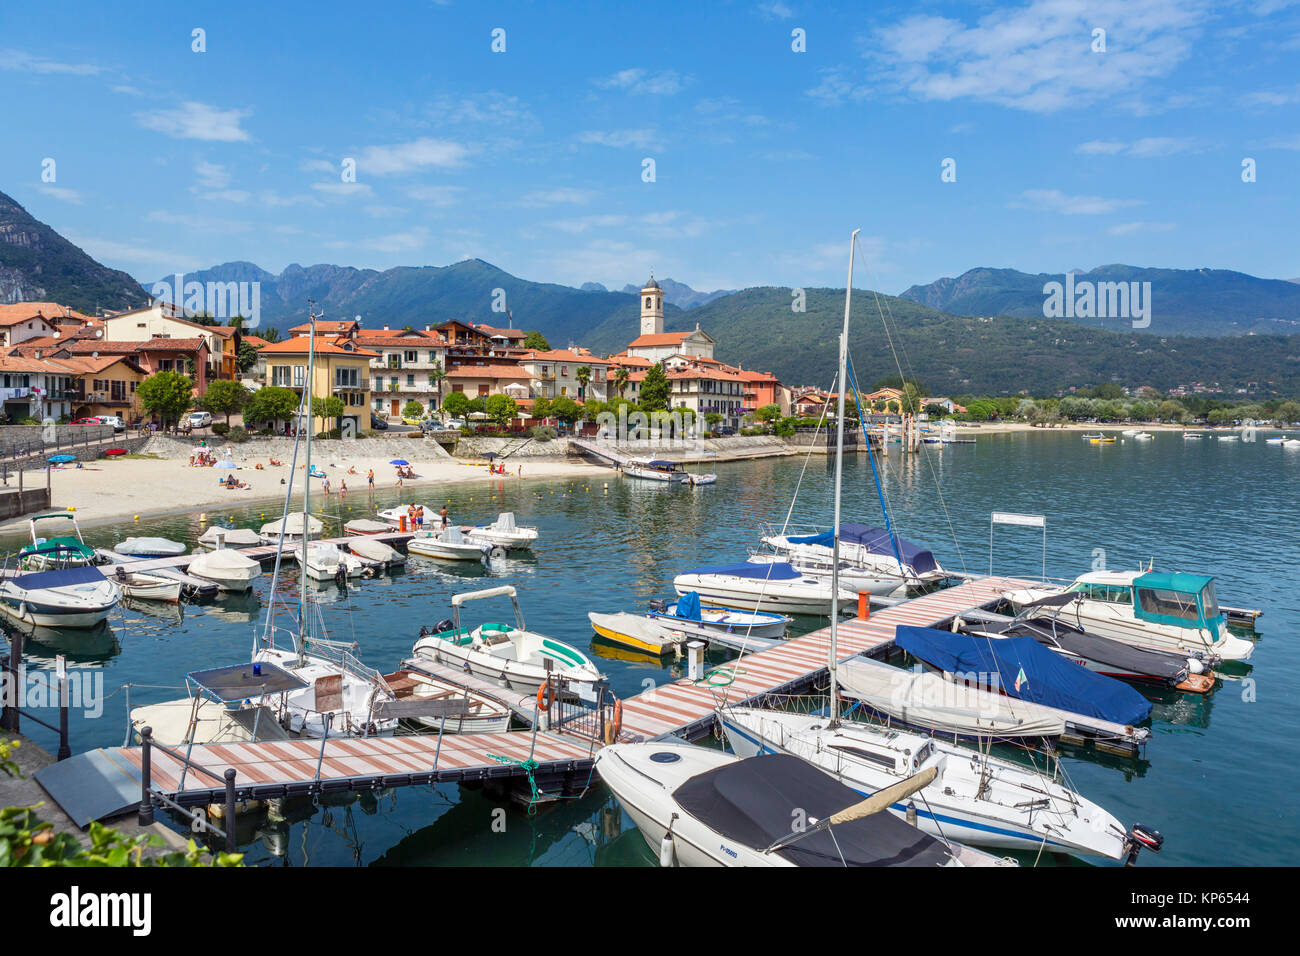 Porto di Feriolo, Lago Maggiore, laghi italiani, Piemonte, Italia Foto Stock